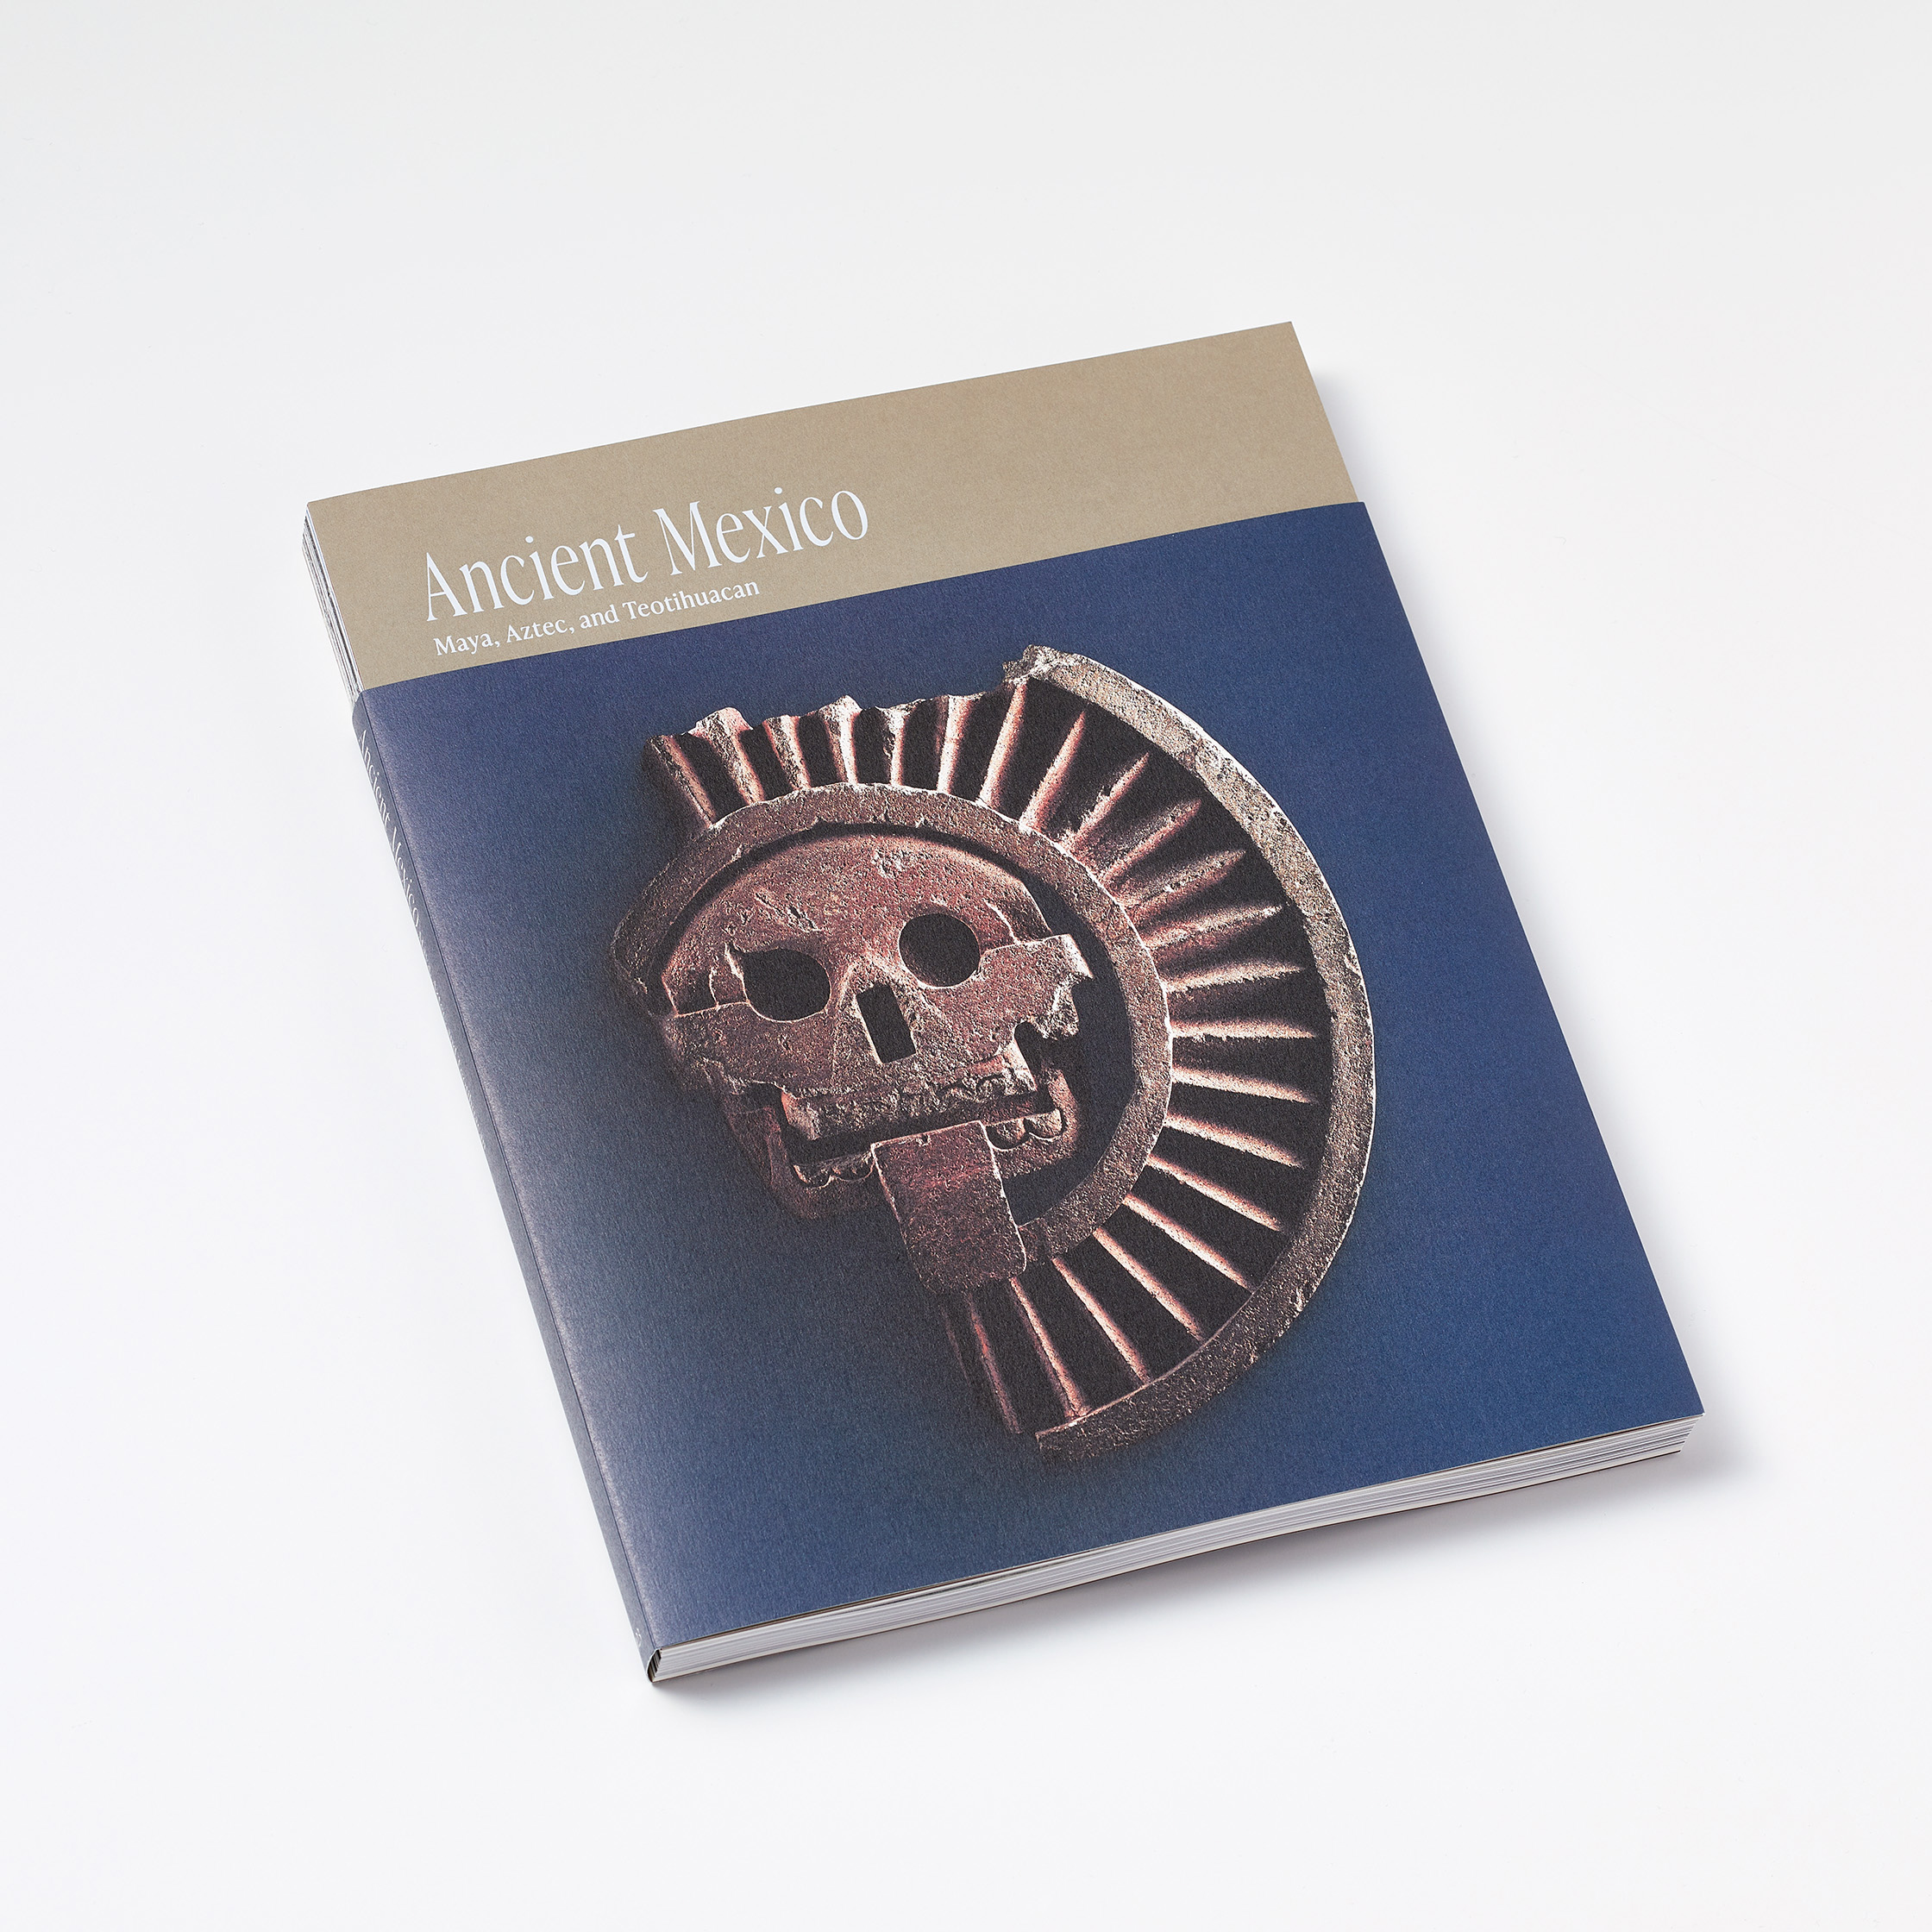 特別展『古代メキシコ ―マヤ、アステカ、テオティワカン』展覧会図録 を当社のオフセット印刷にて製作